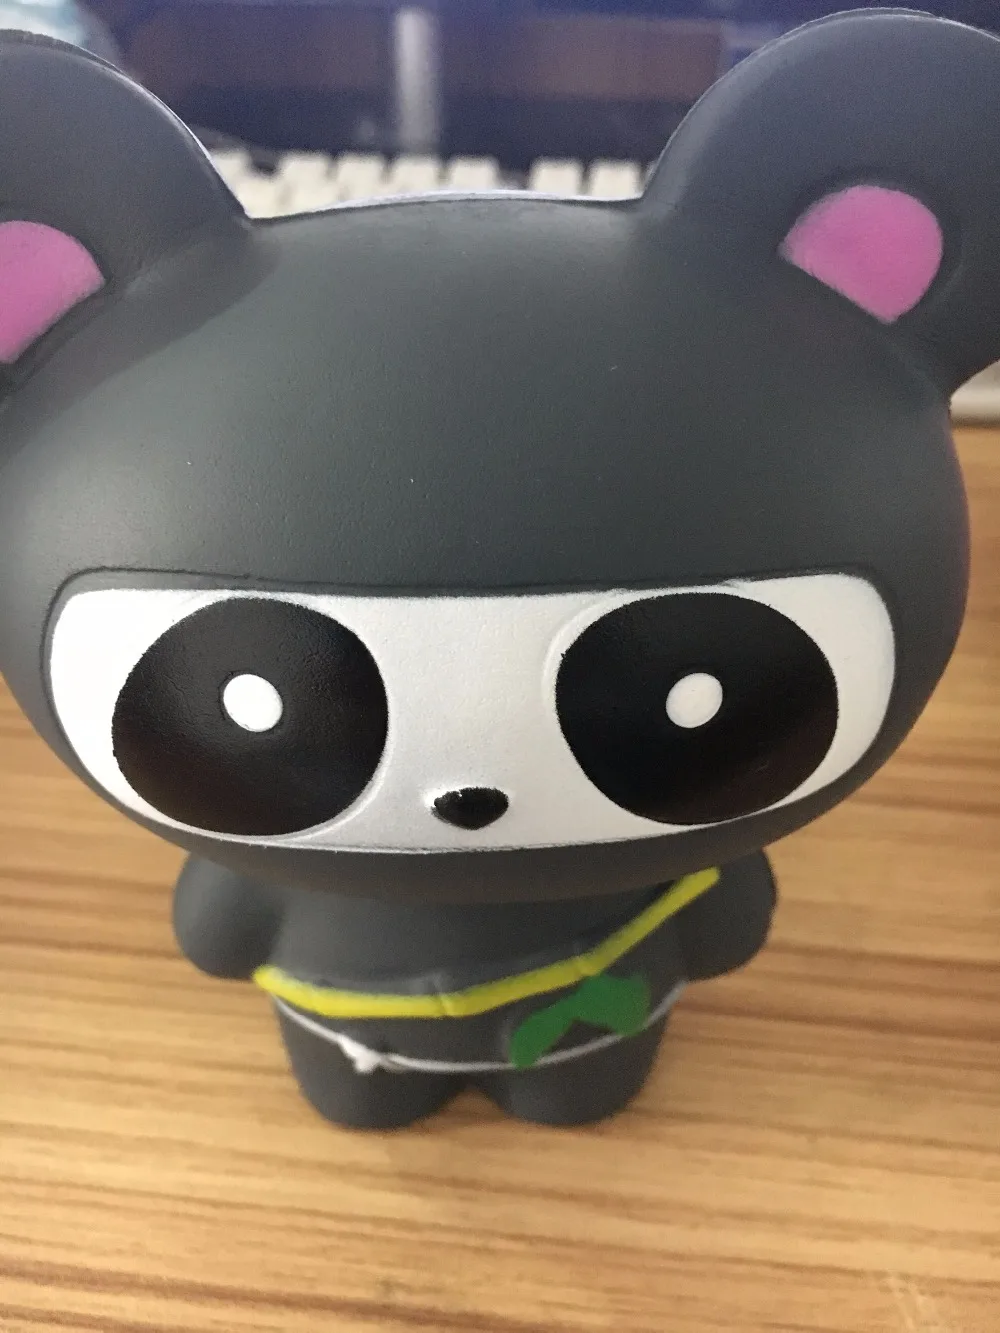 Mskwee Jumbo 14 см Kawaii ниндзя Squishy Panda Мягкие замедлить рост Веселый малыш игрушки мультфильм декомпрессии Squeeze игрушки для детей